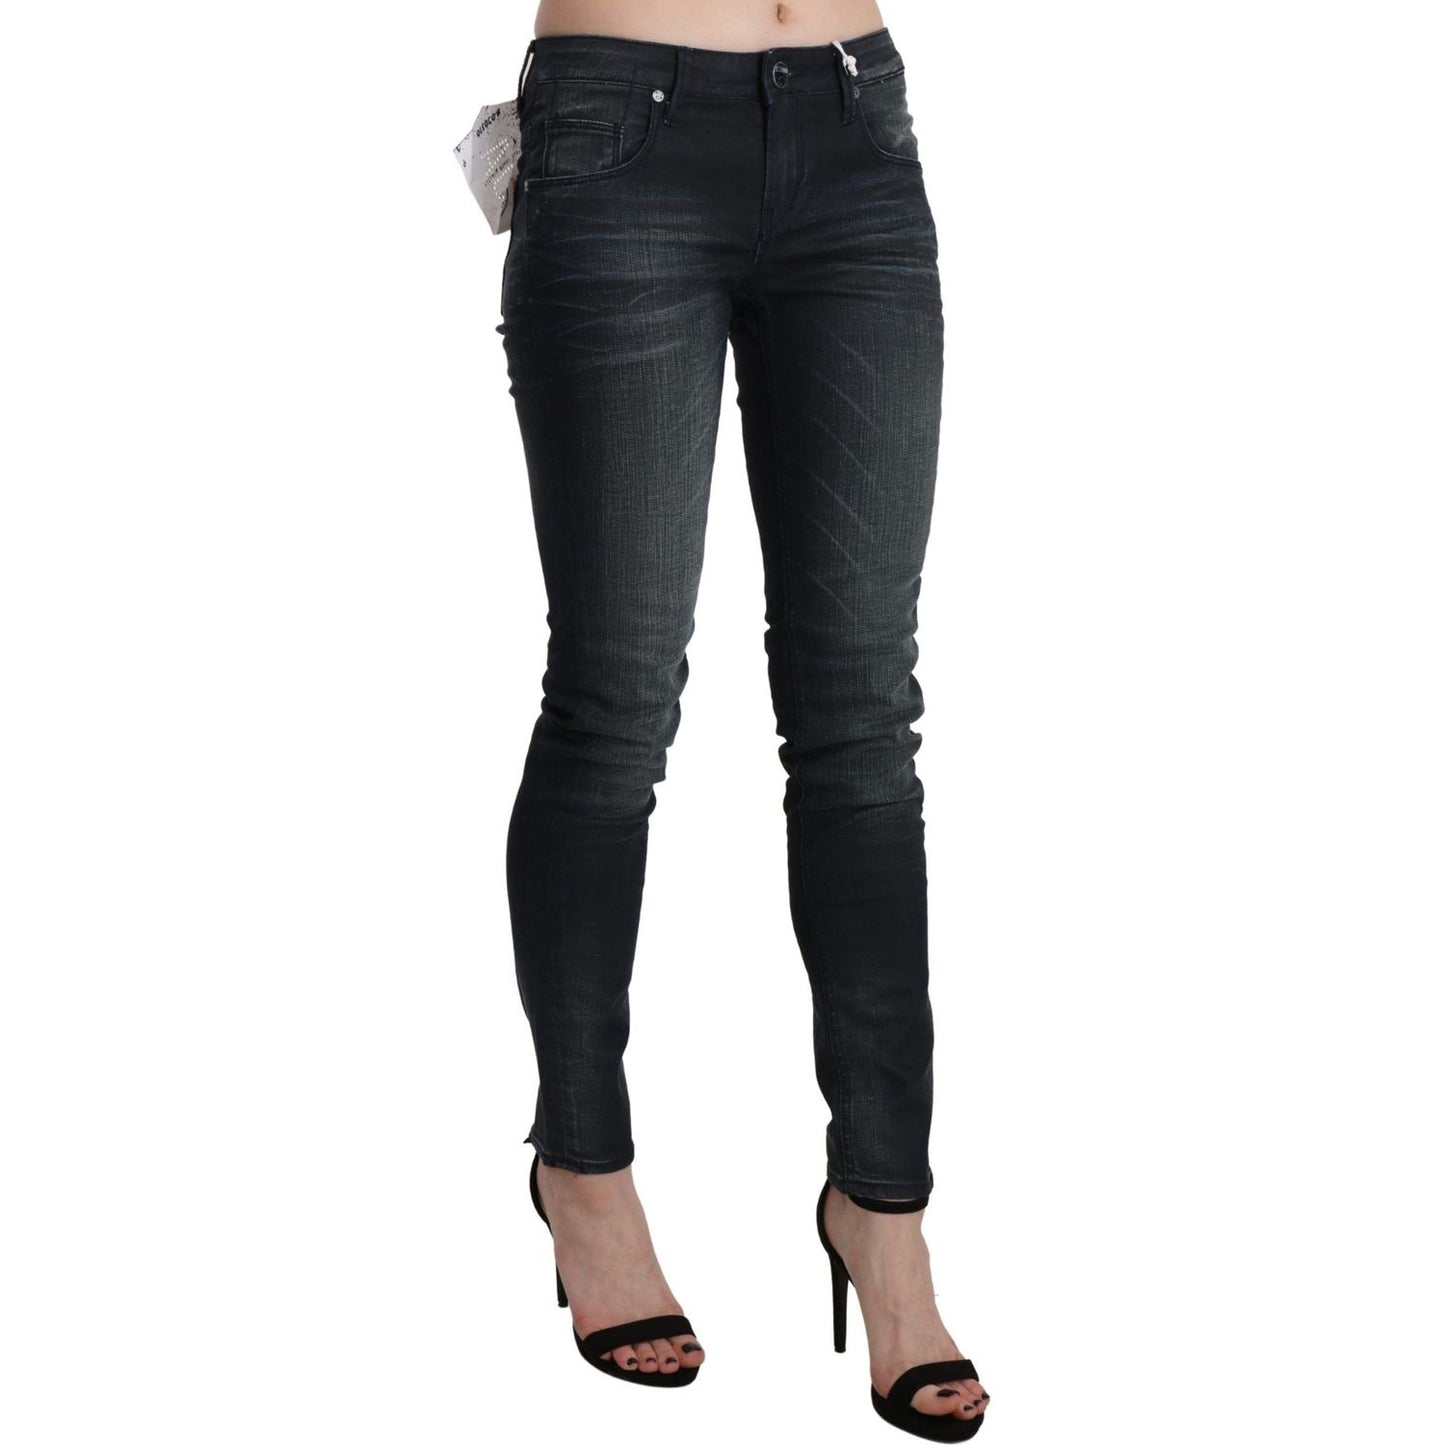 Acht Elegant Low Waist Skinny Black Jeans Jeans & Pants black-washed-low-waist-skinny-denim-trouser